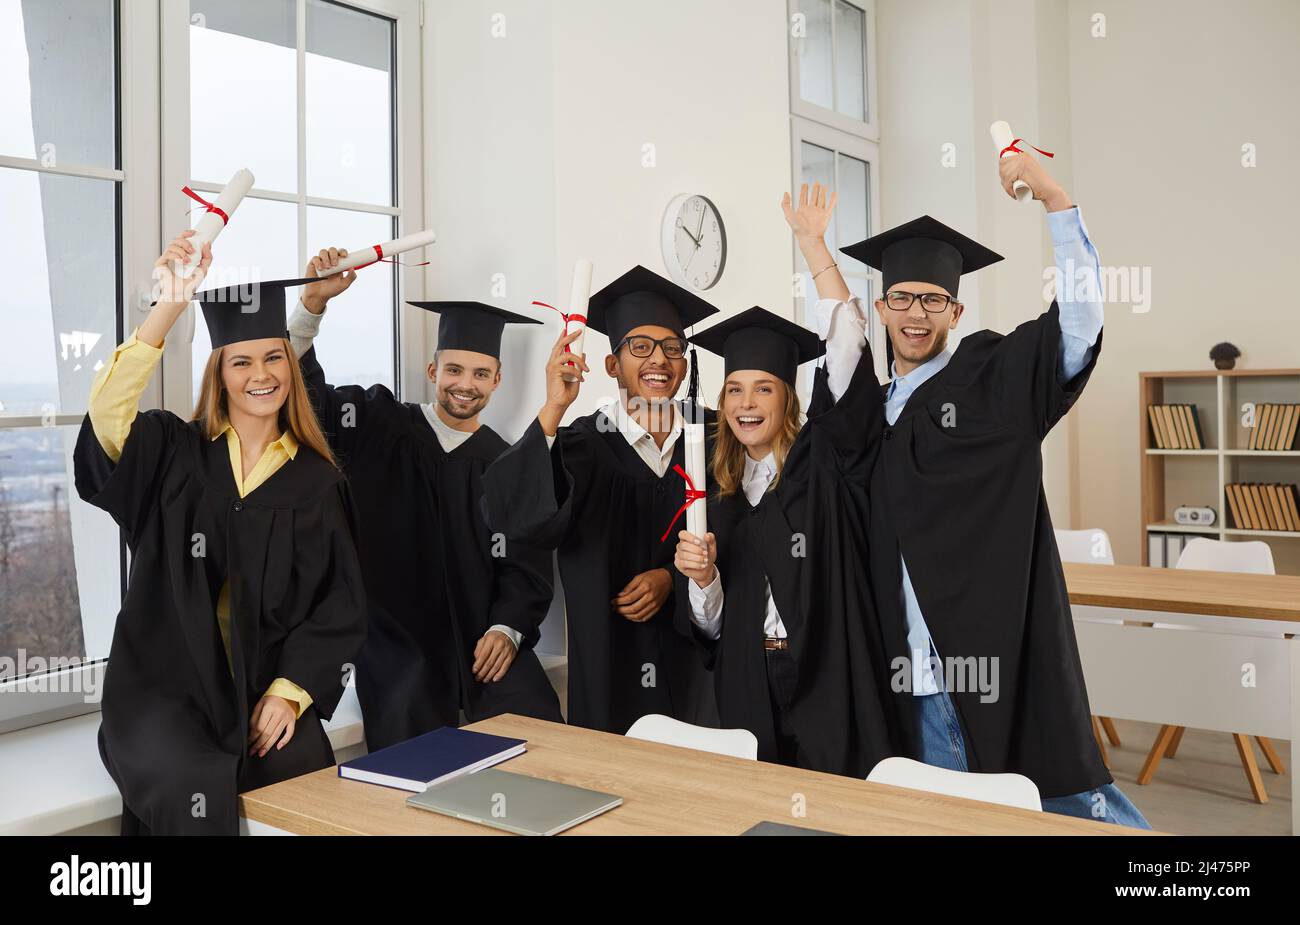 Gruppo di felice gioioso laureati diversi in caps e camici che tengono in mano i diplomi Foto Stock